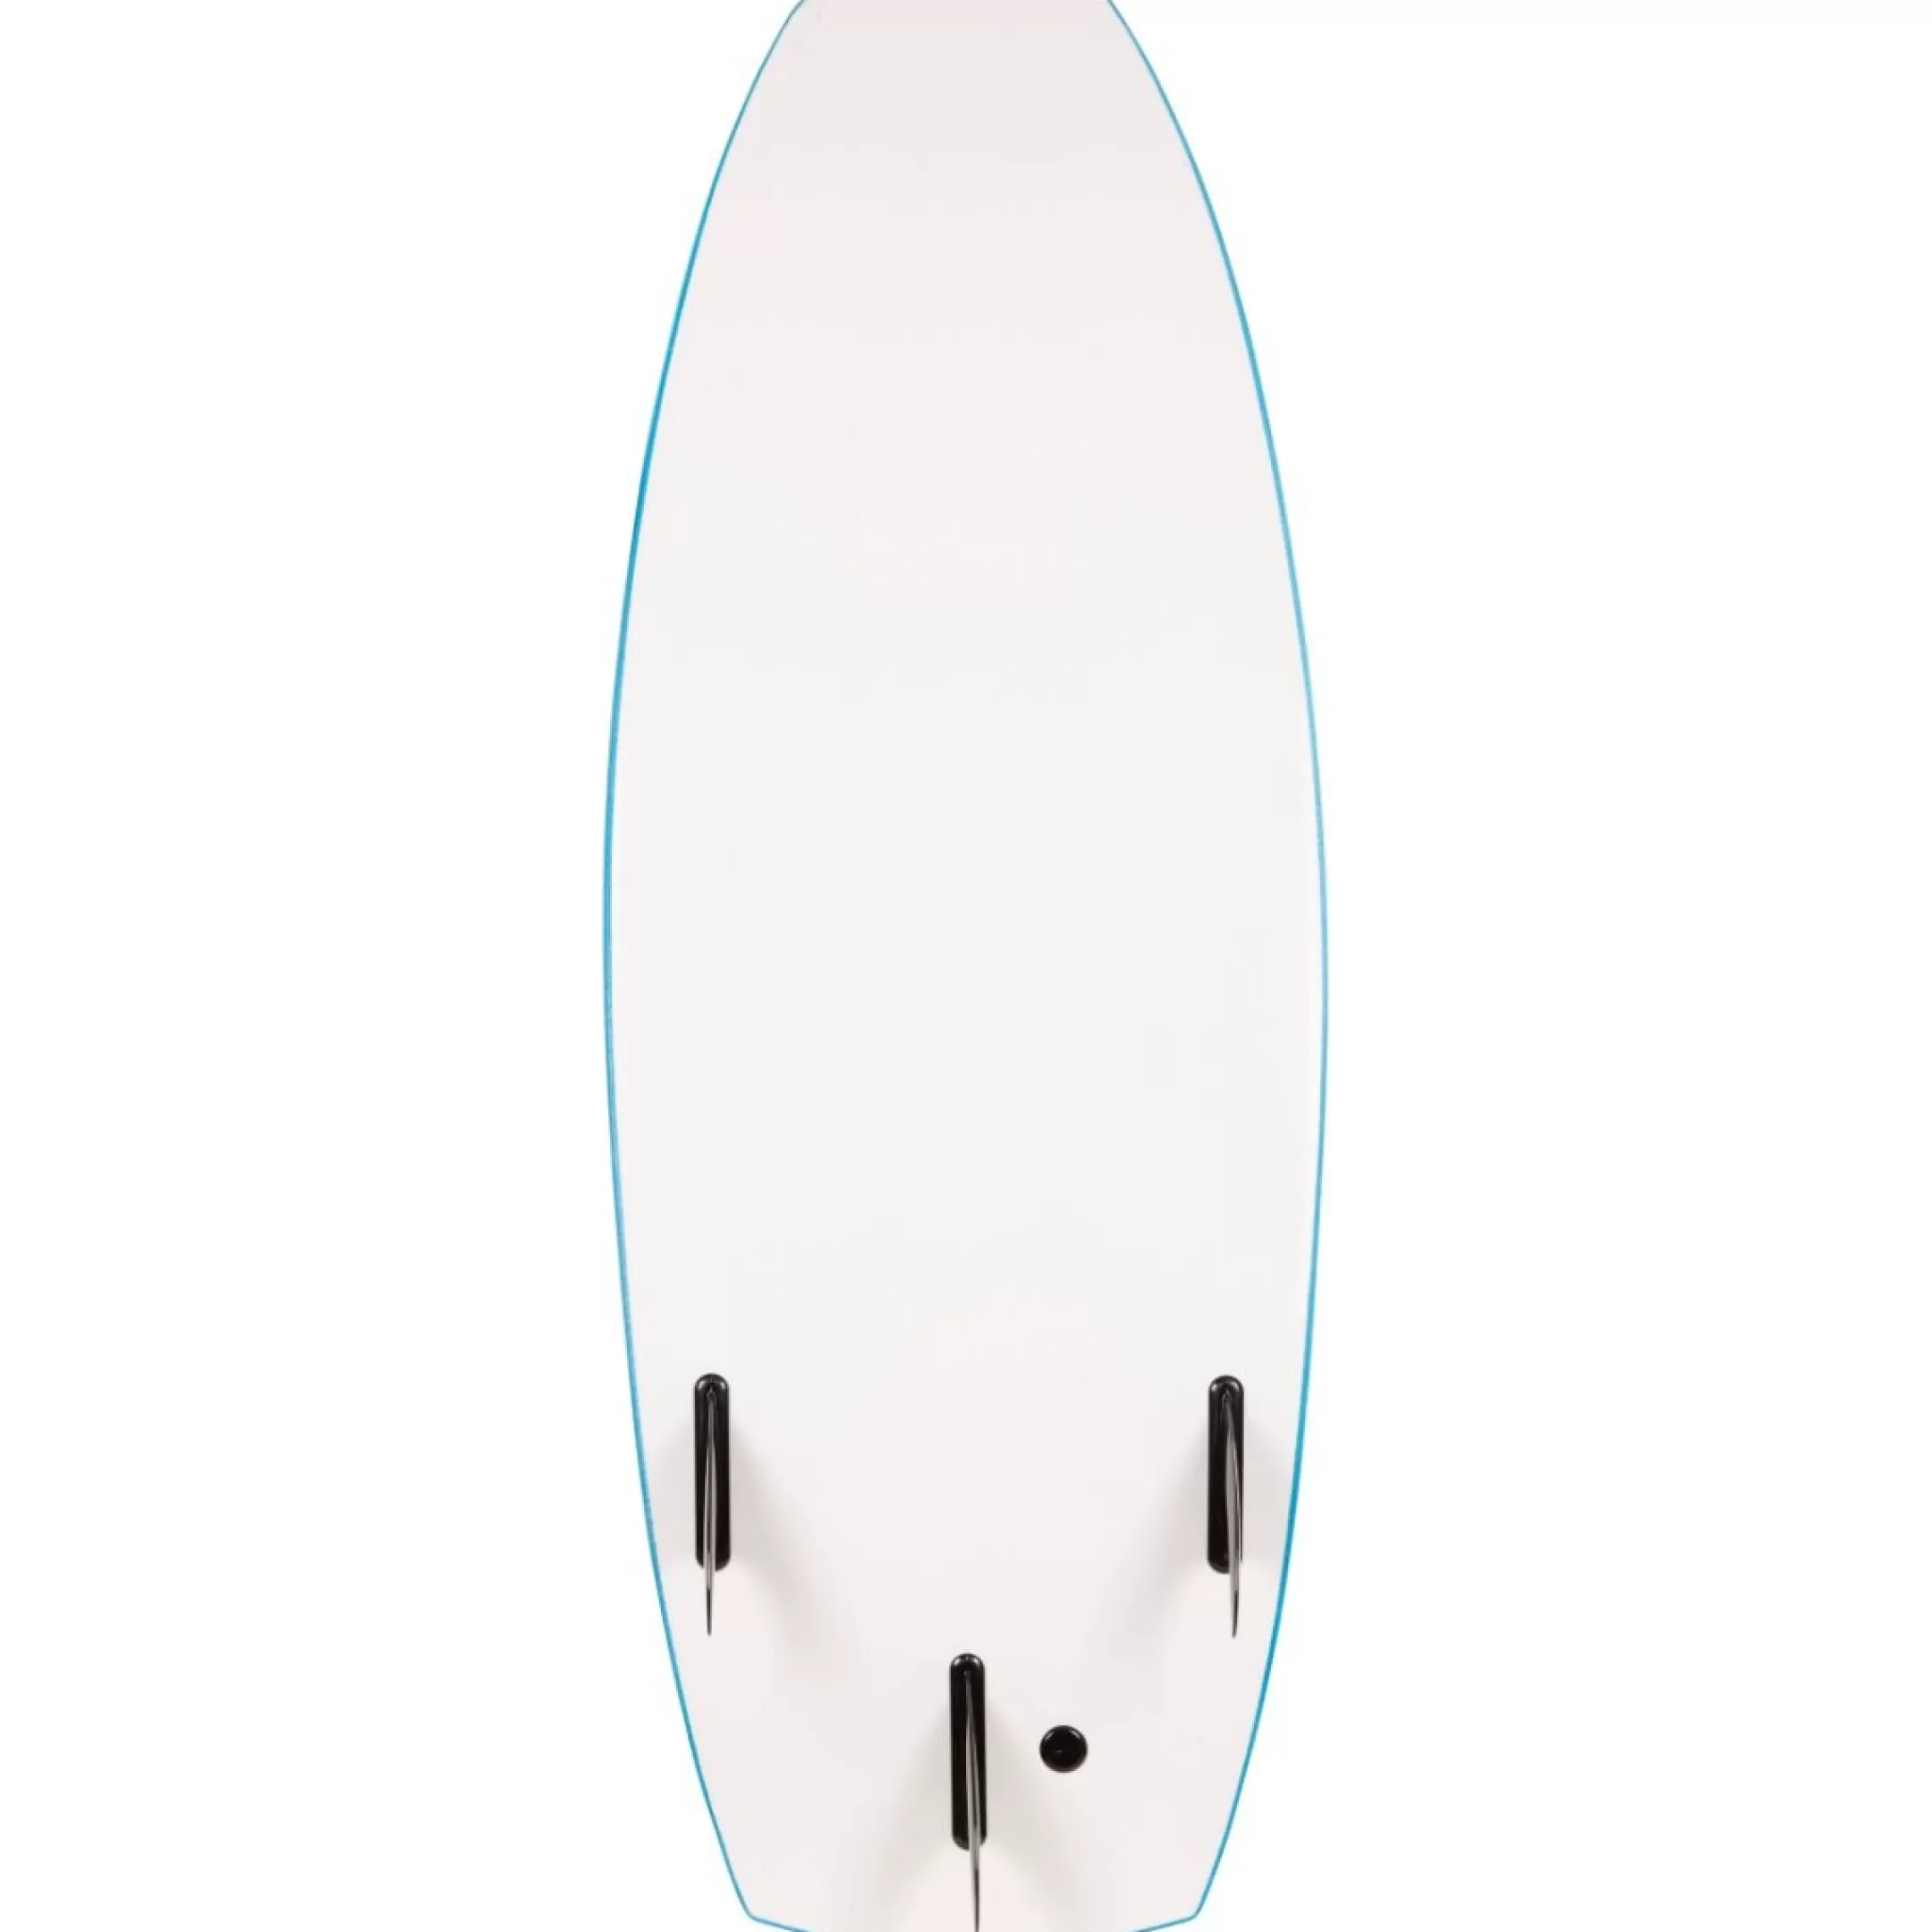 5ft Surfboard Gromit | Trespass Best